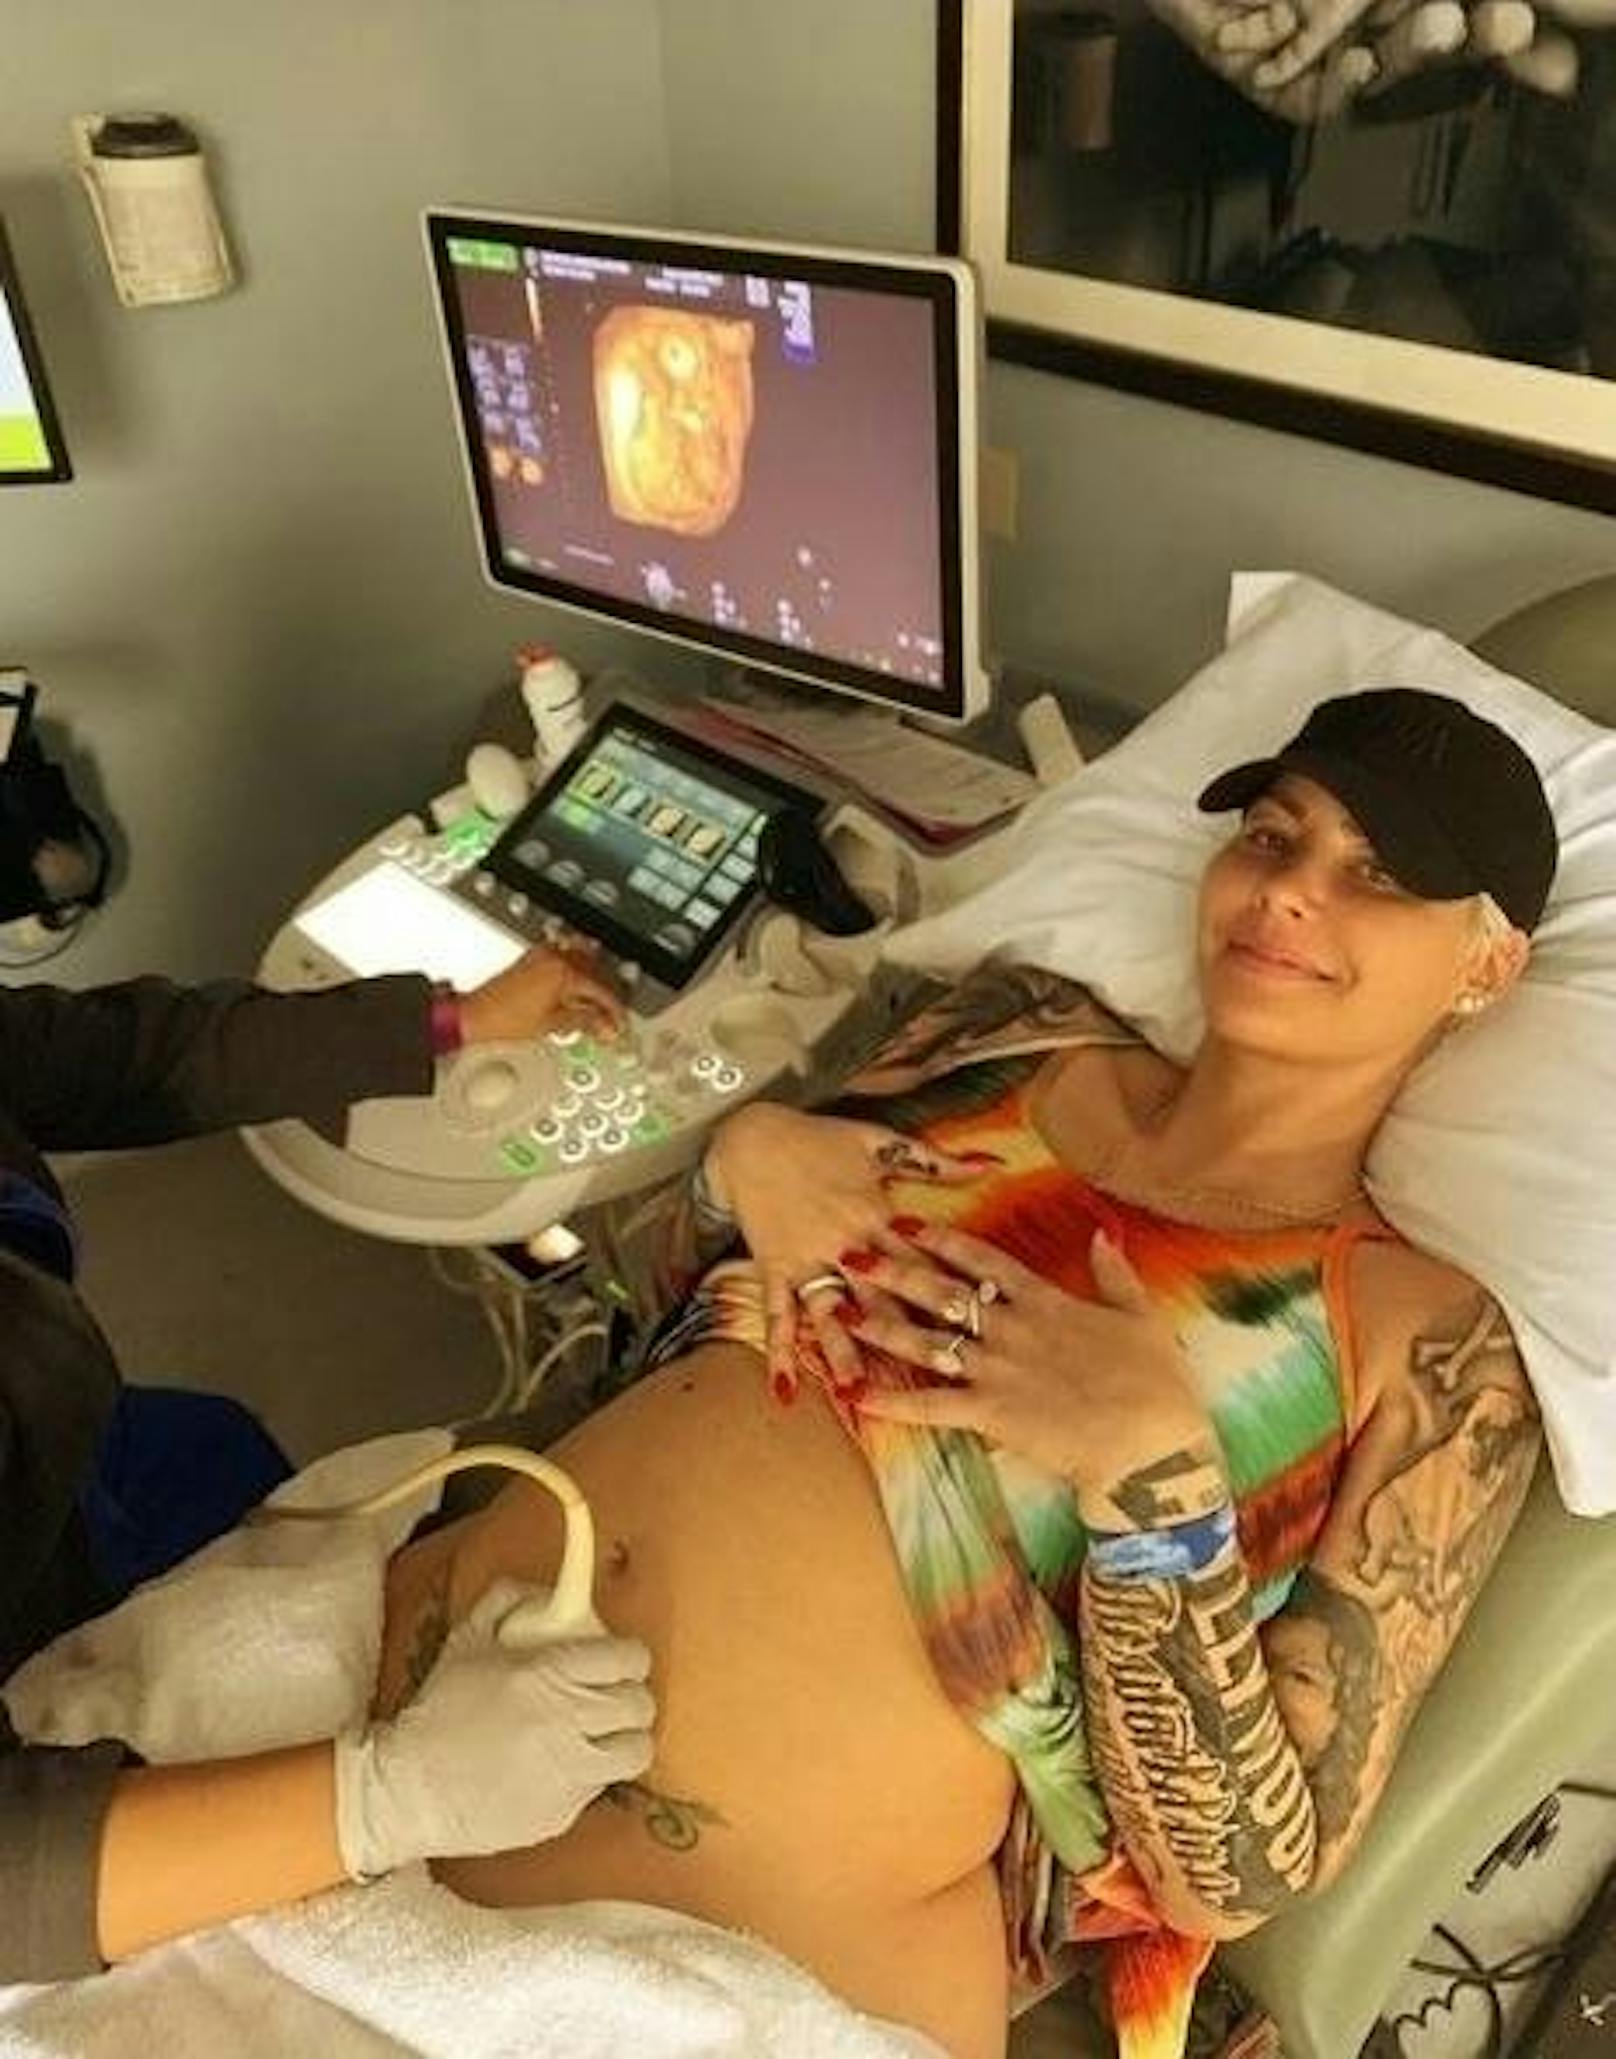 04.04.2019: Amber Rose erwartet ihr zweites Kind. Auf Instagram ließ die 35-Jährige ihre Fans mit einem Ultraschallfoto wissen, dass ihr Sohn Sebastian bald ein großer Bruder sein wird.